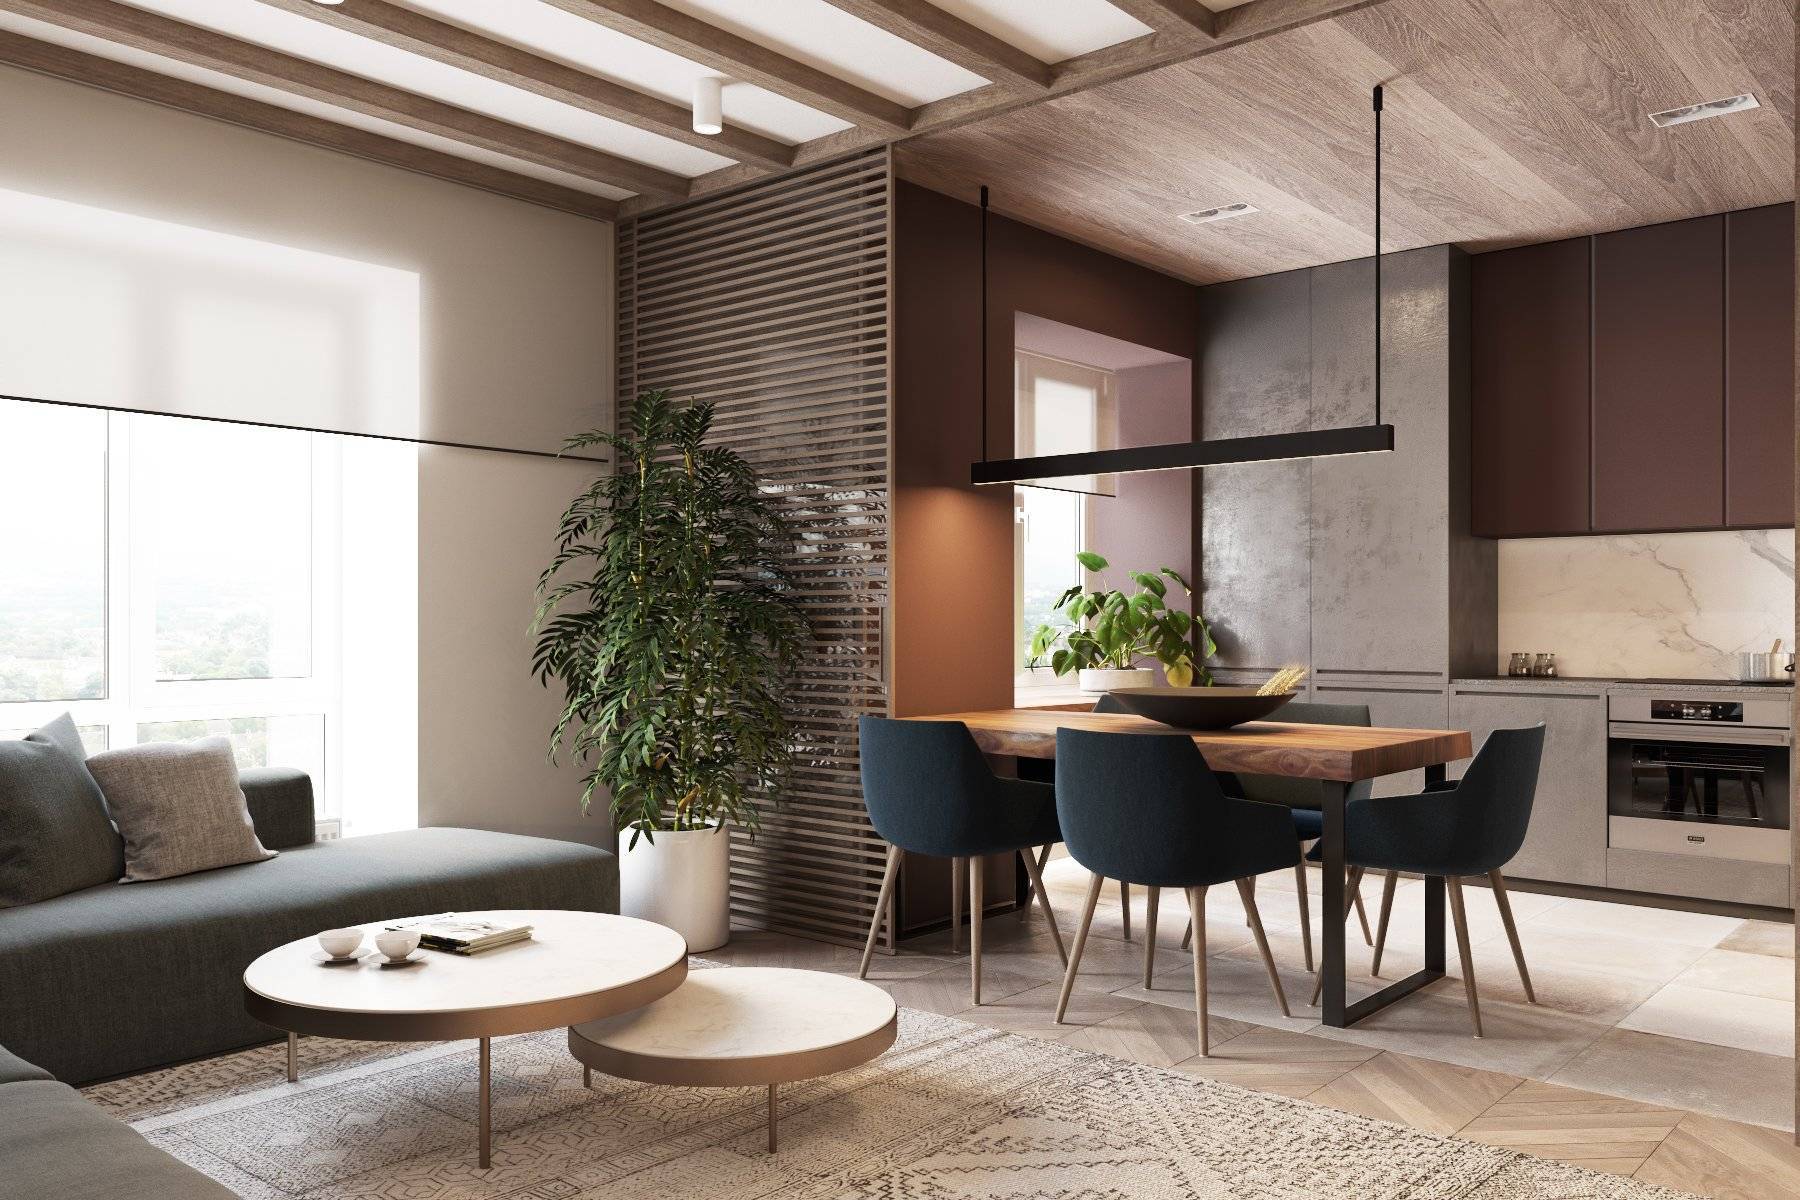 Как создать контемпорари стиль в интерьере квартиры?
как создать контемпорари стиль в интерьере квартиры?